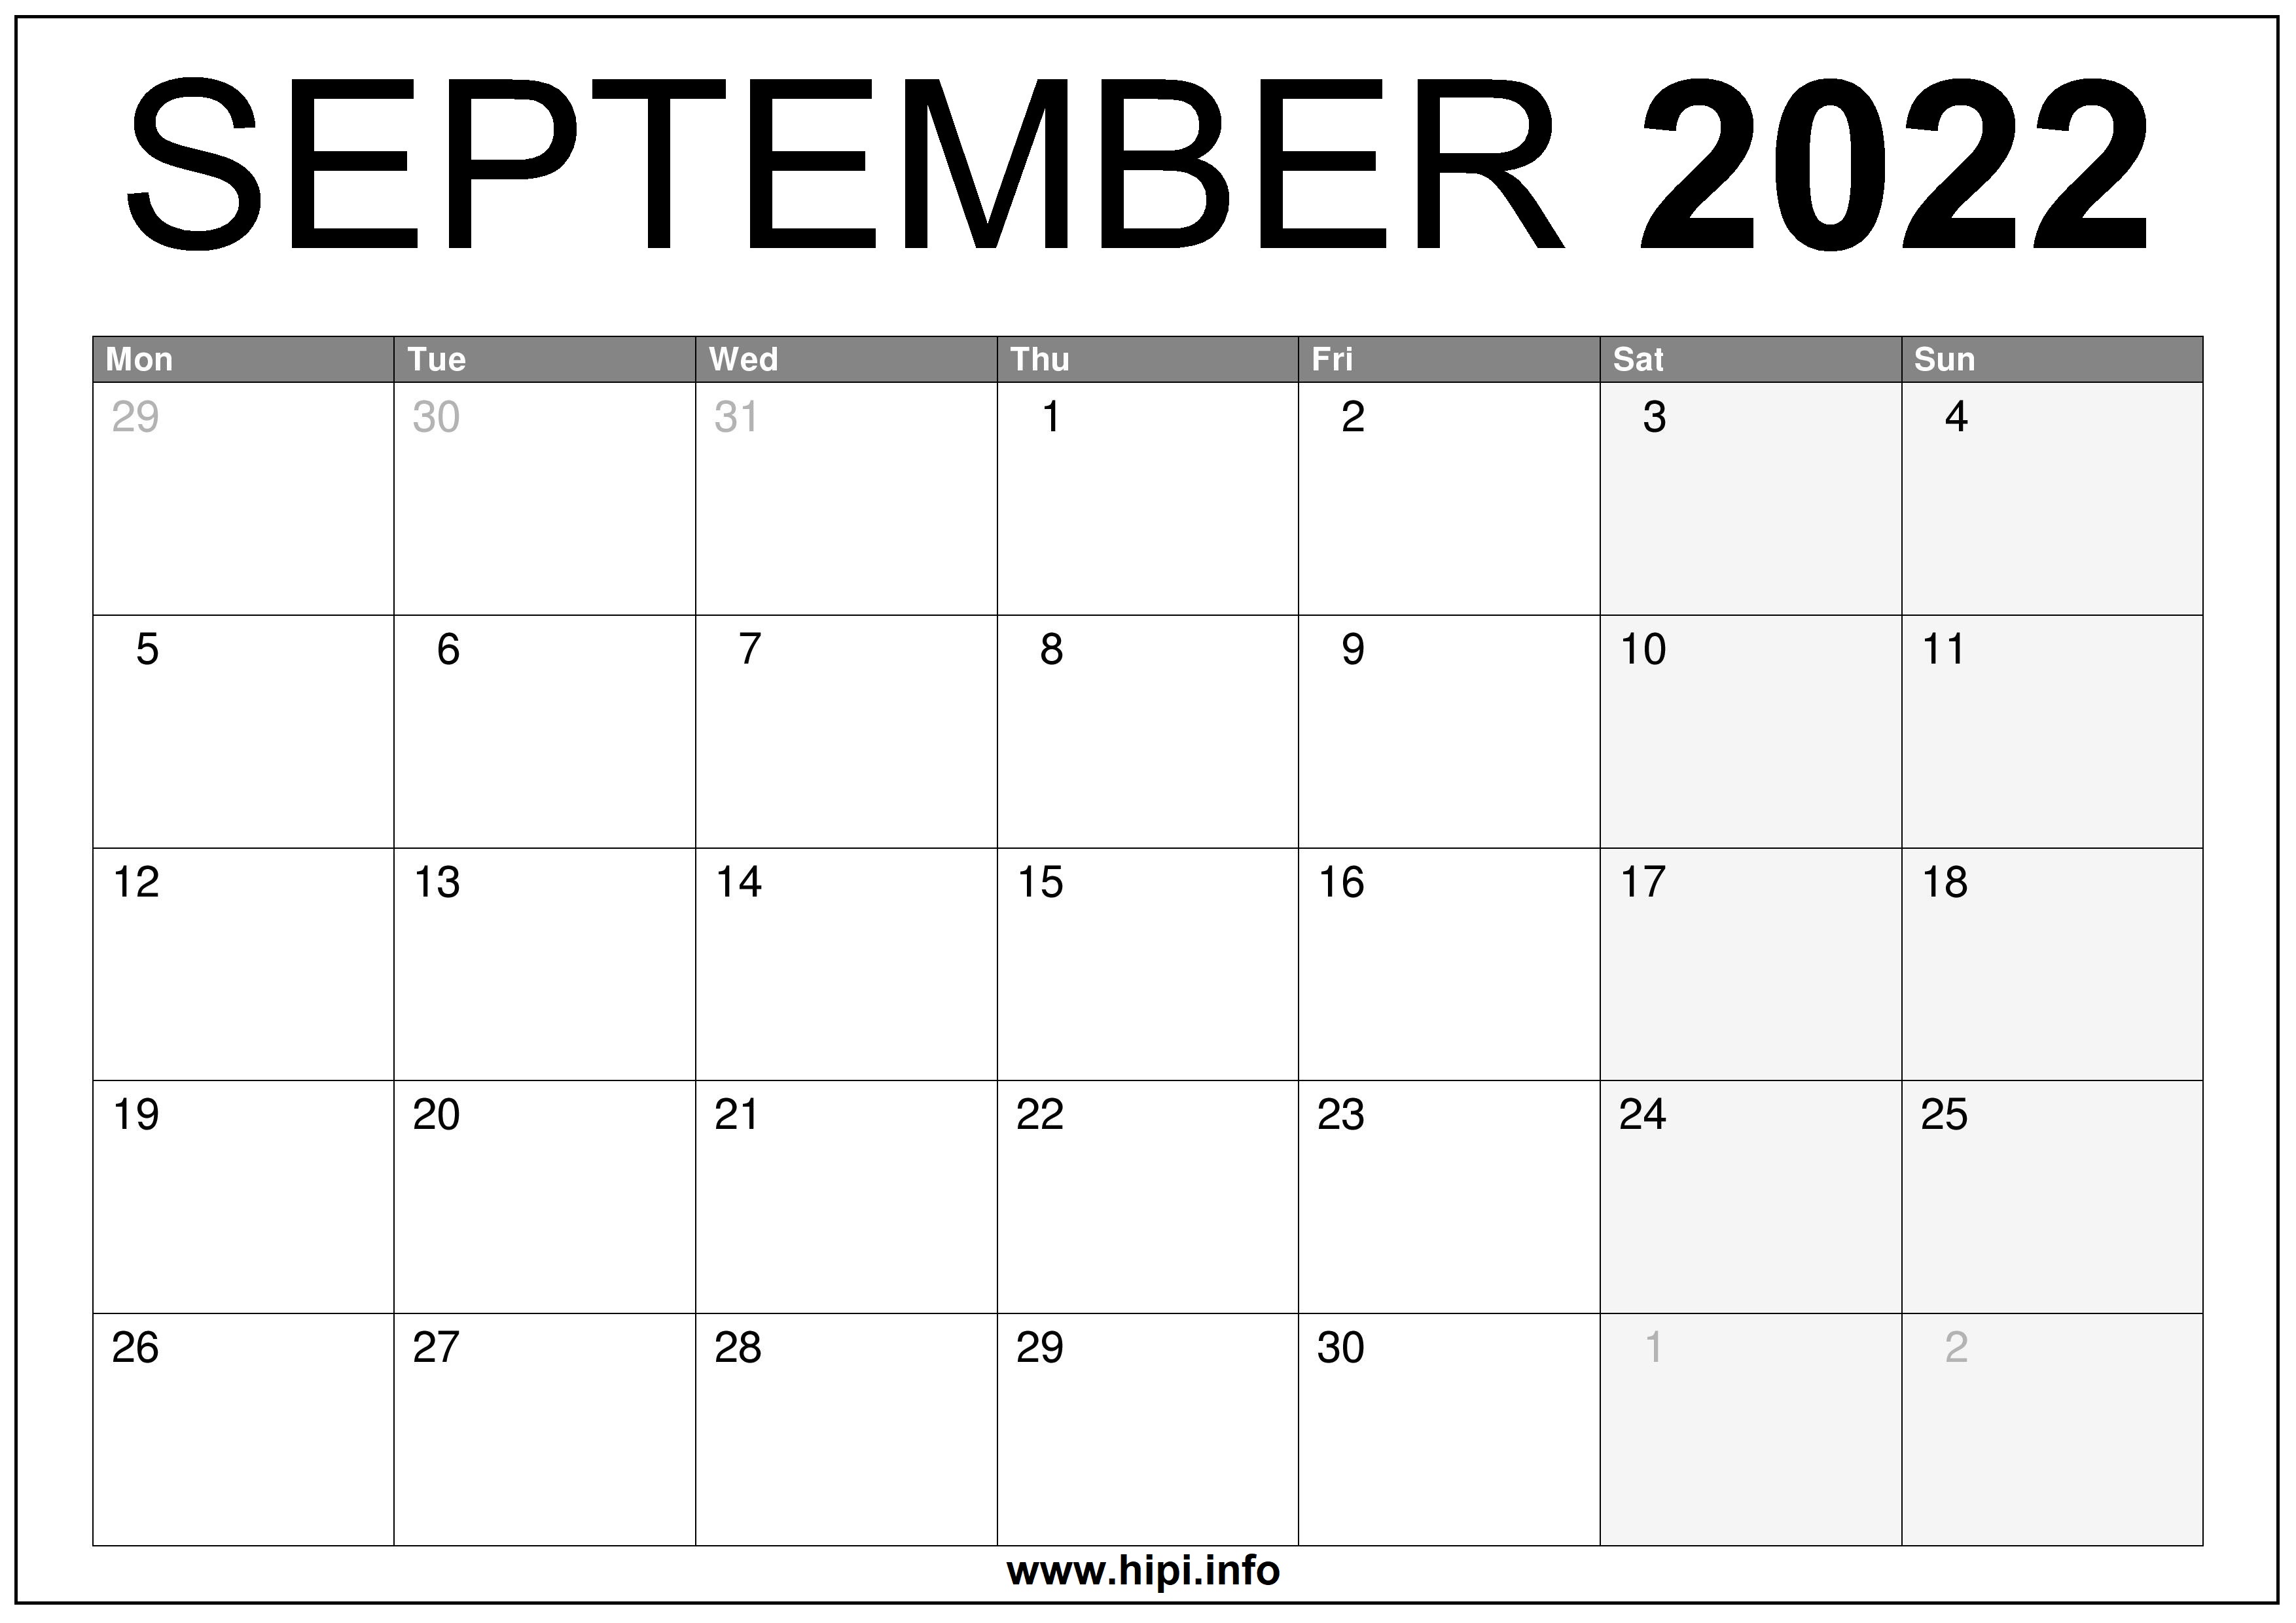 Free Printable Calendar September 2022 September 2022 Uk Calendar Printable Free - Hipi.info | Calendars Printable  Free